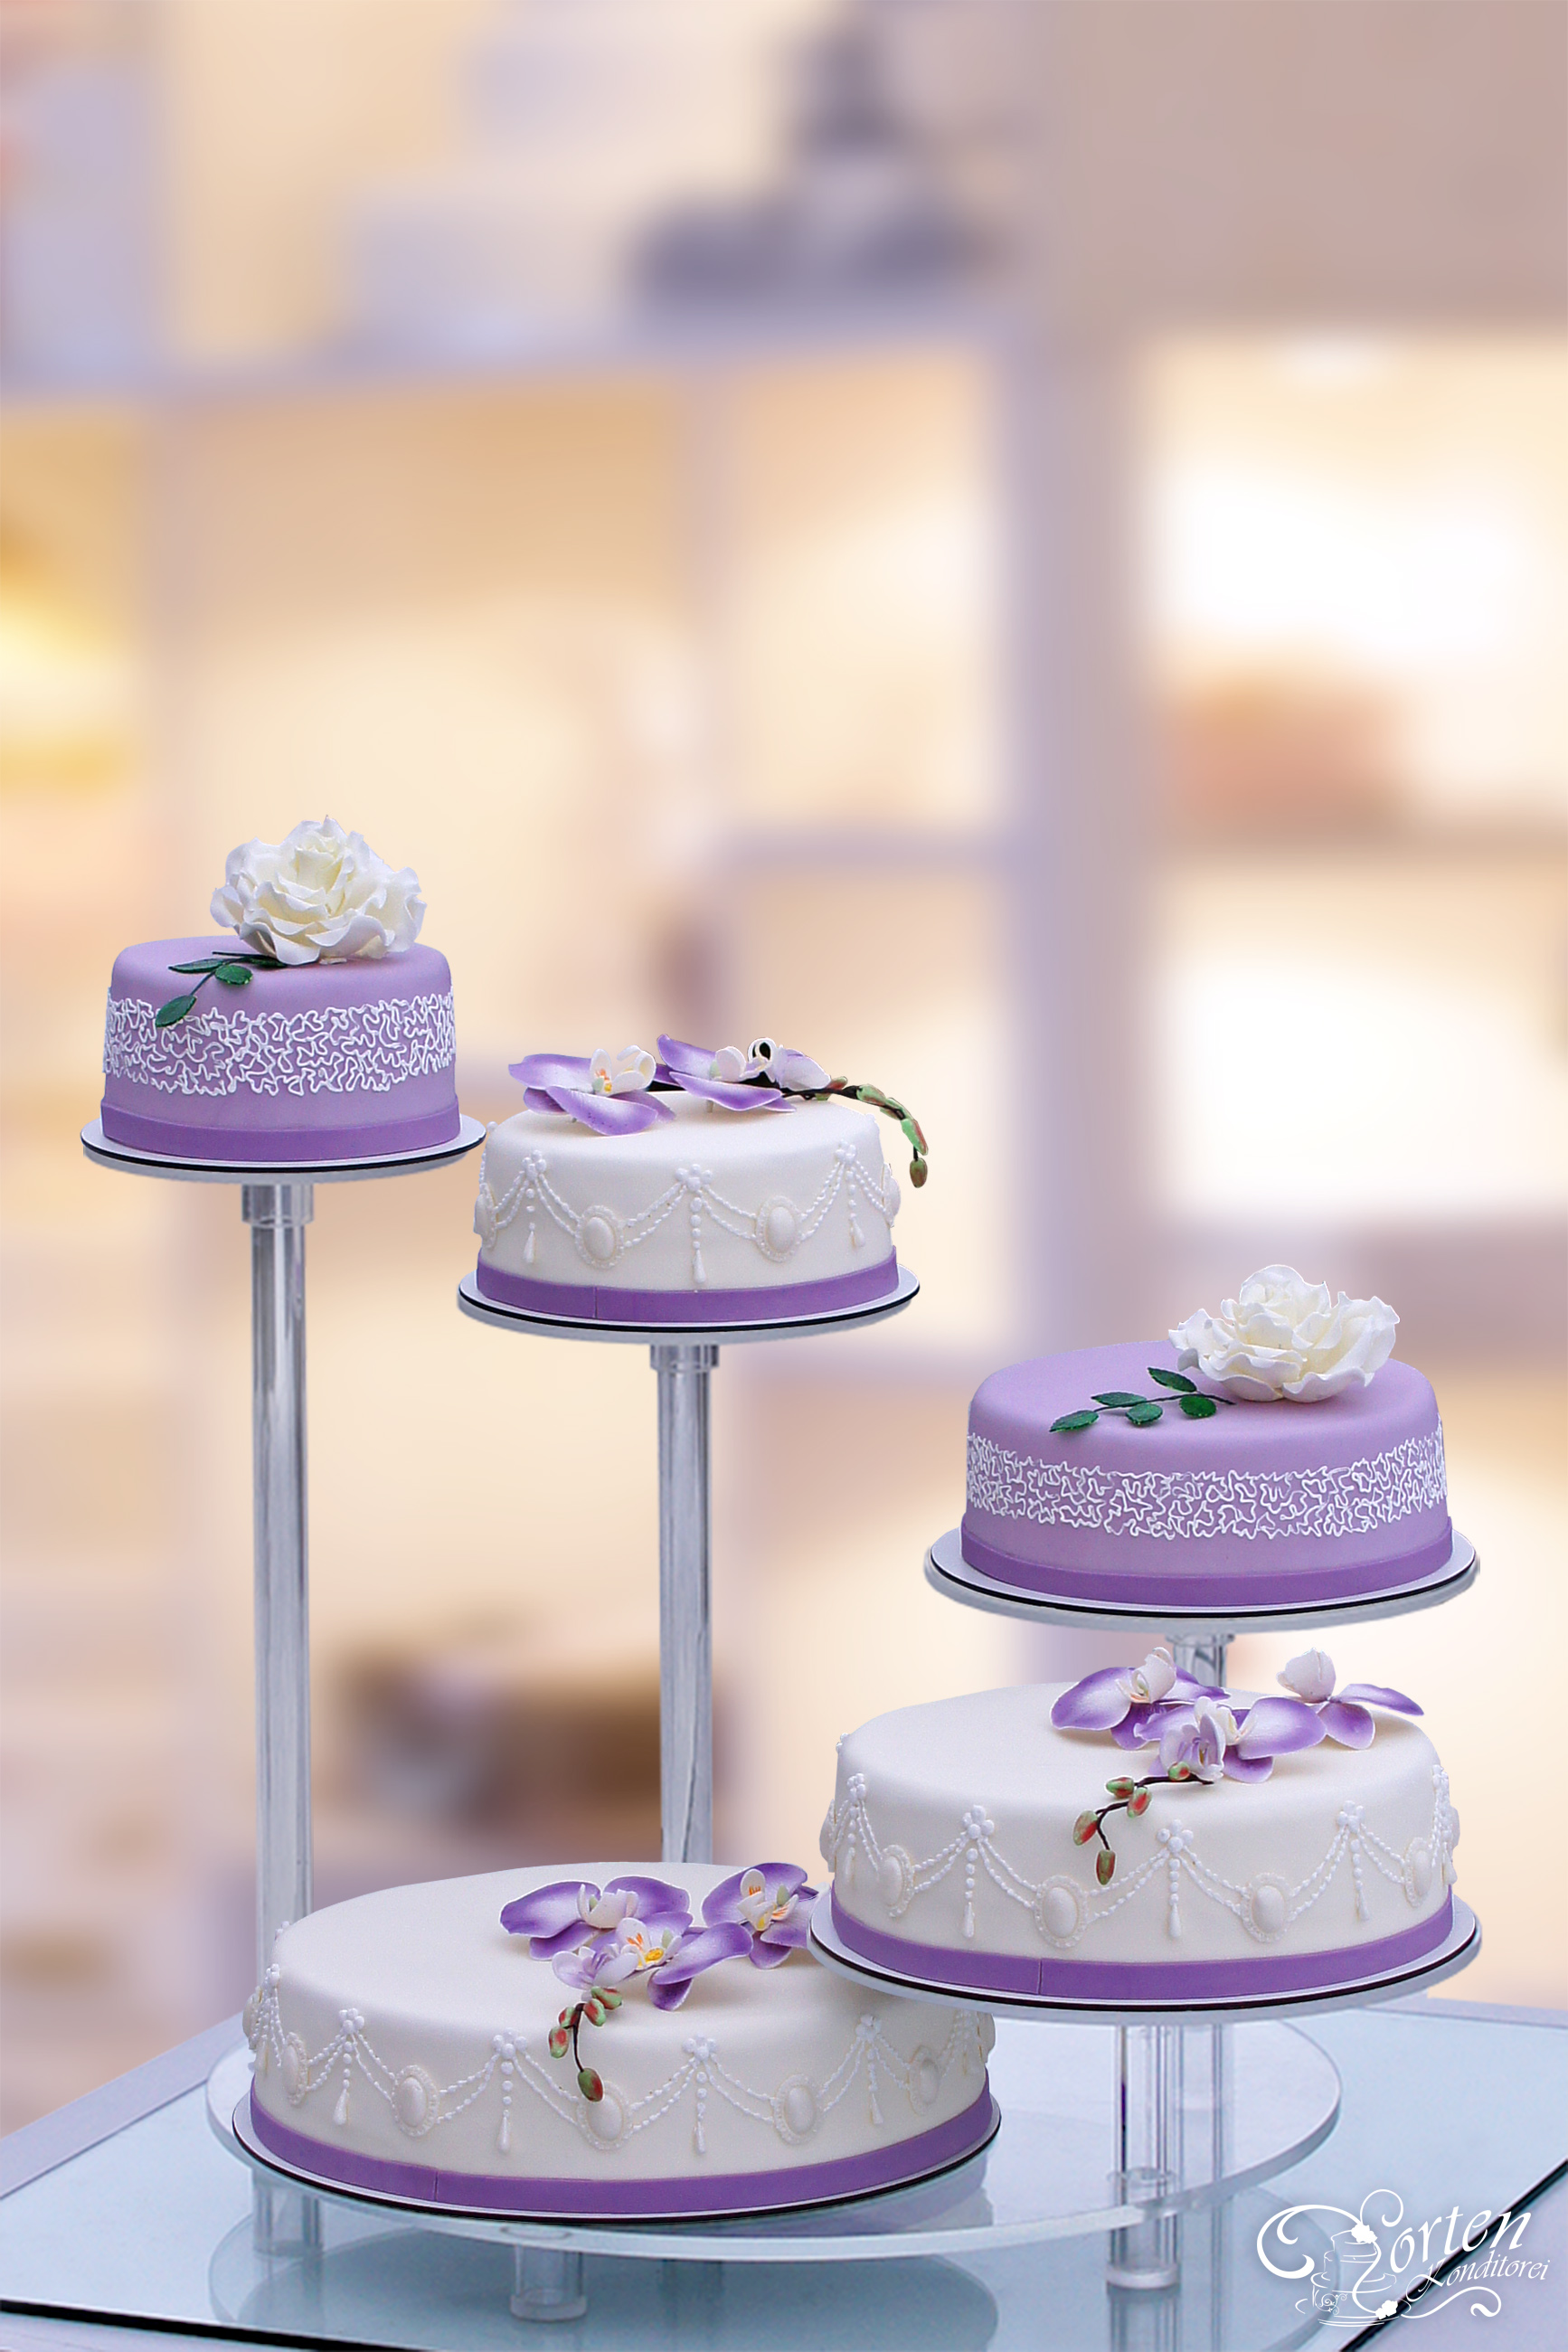 5 Etagen-Hochzeitstorte in lila flieder, je nach Schnittgröße ca. 130-150 Tortenstücke.